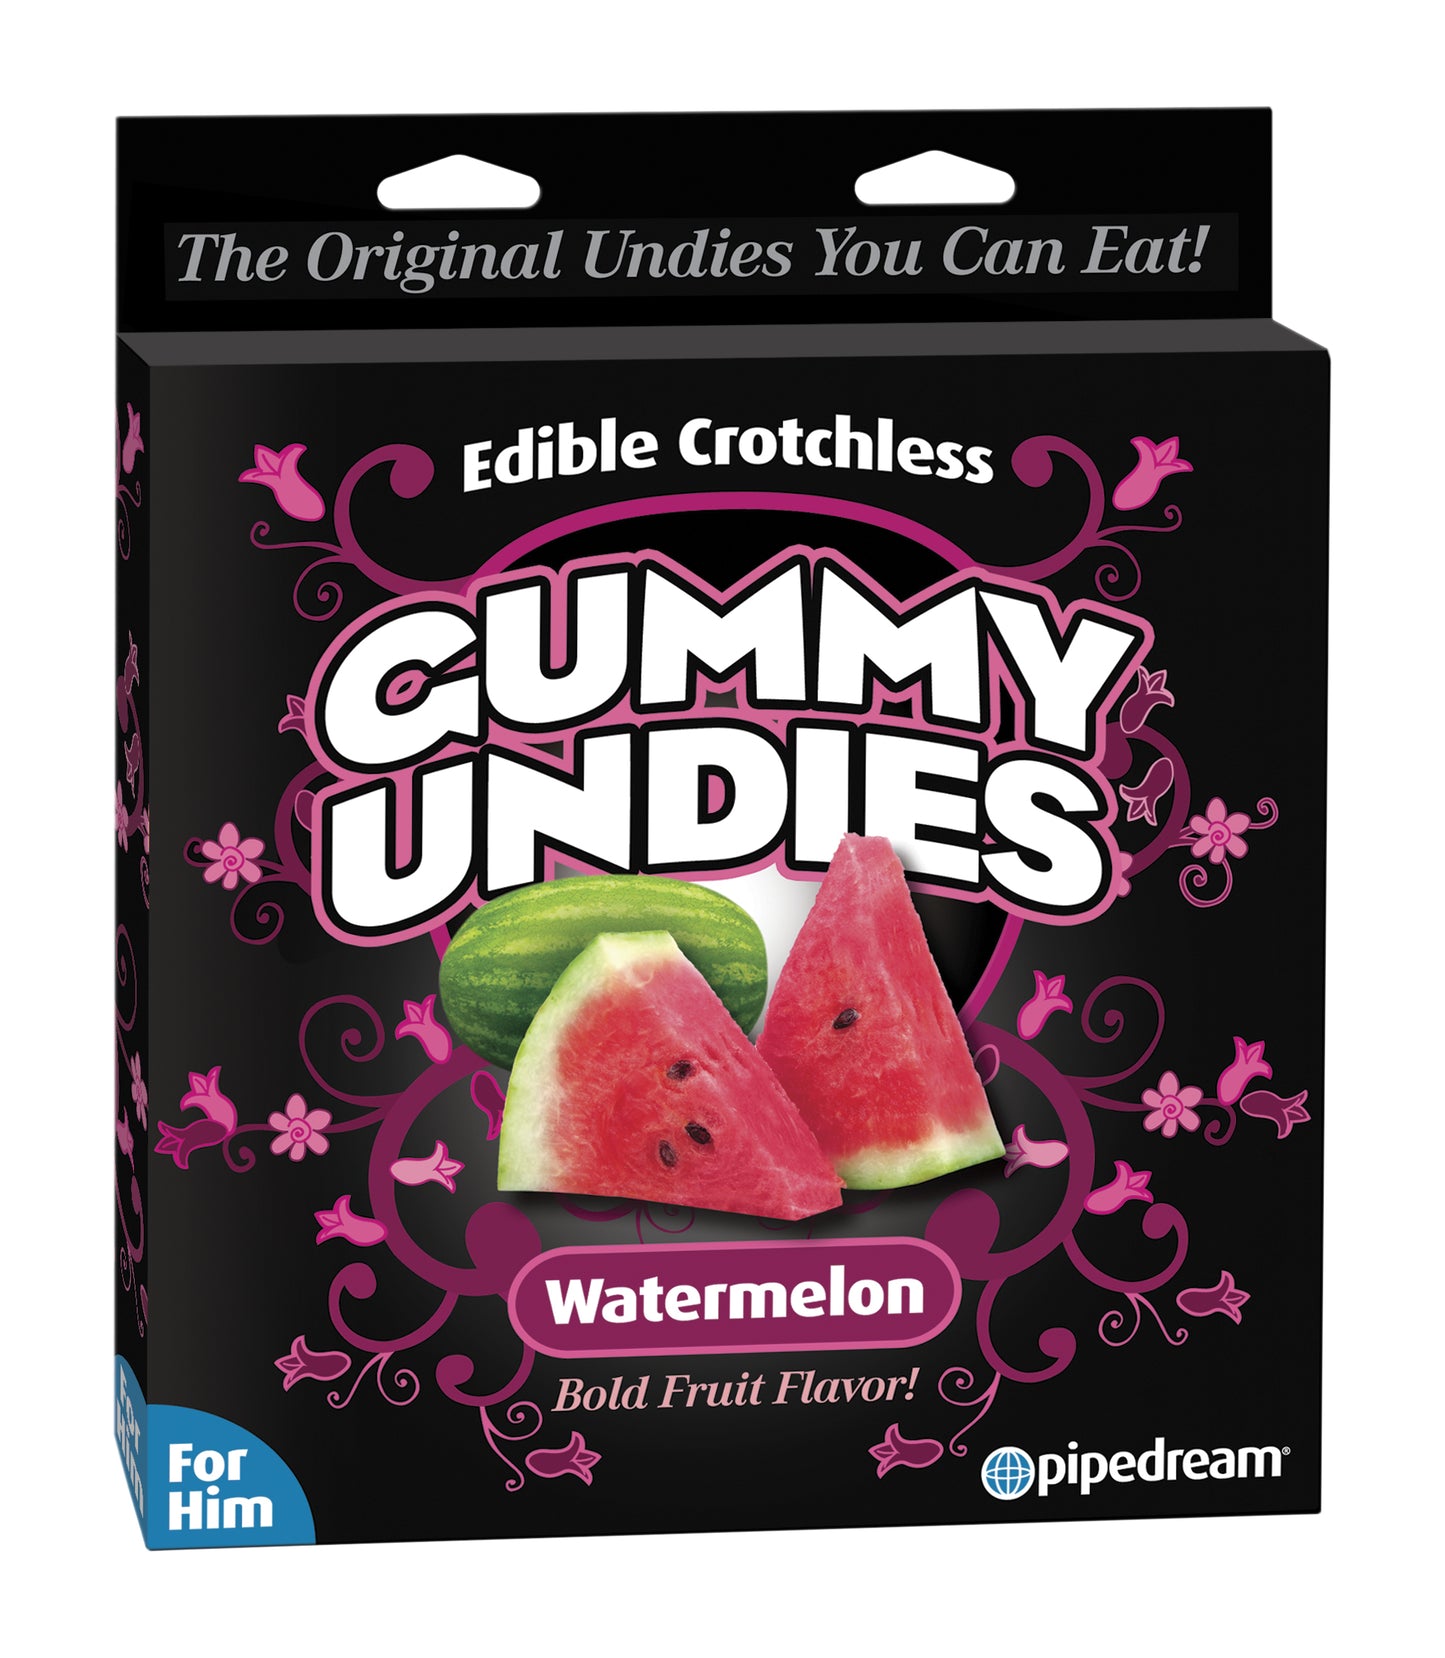 Edible Male Gummy Undies